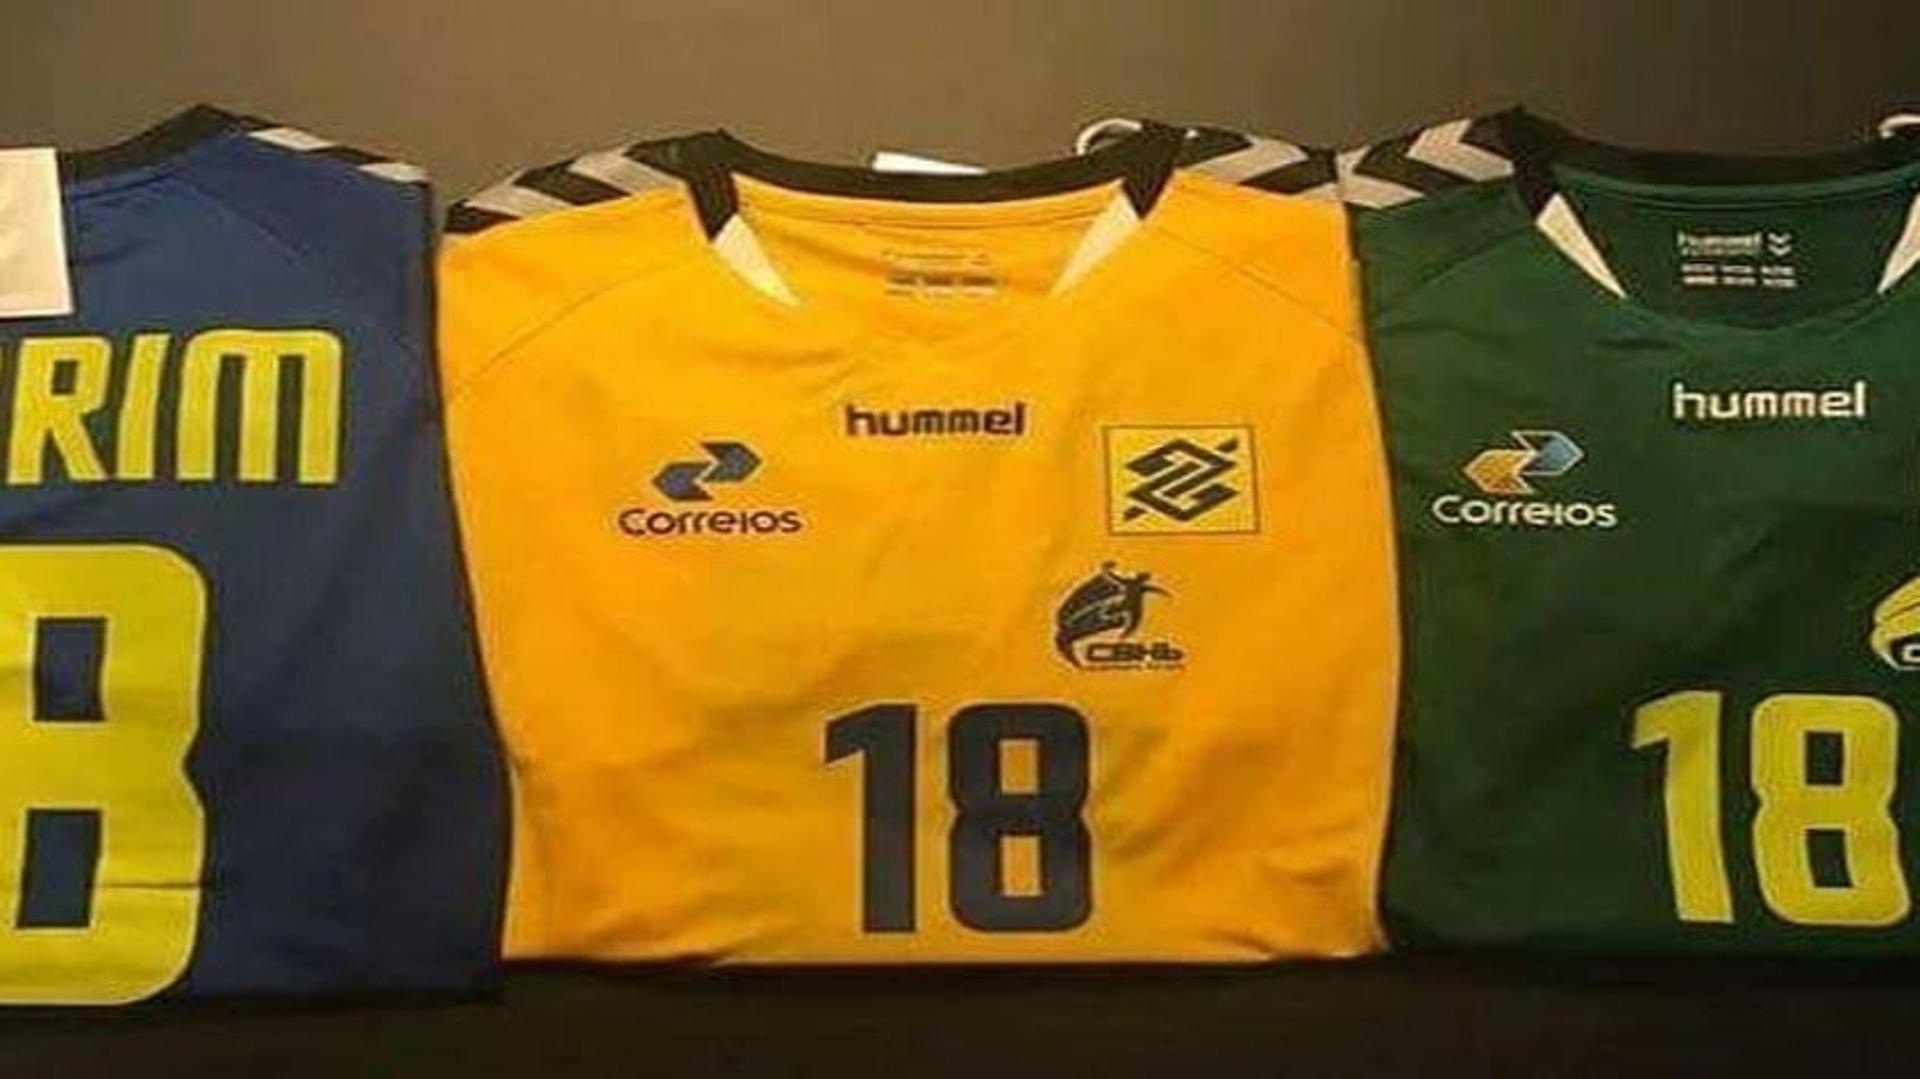 Hummel é o novo fornecedor de material esportivo da Confederação Brasileira de Handebol